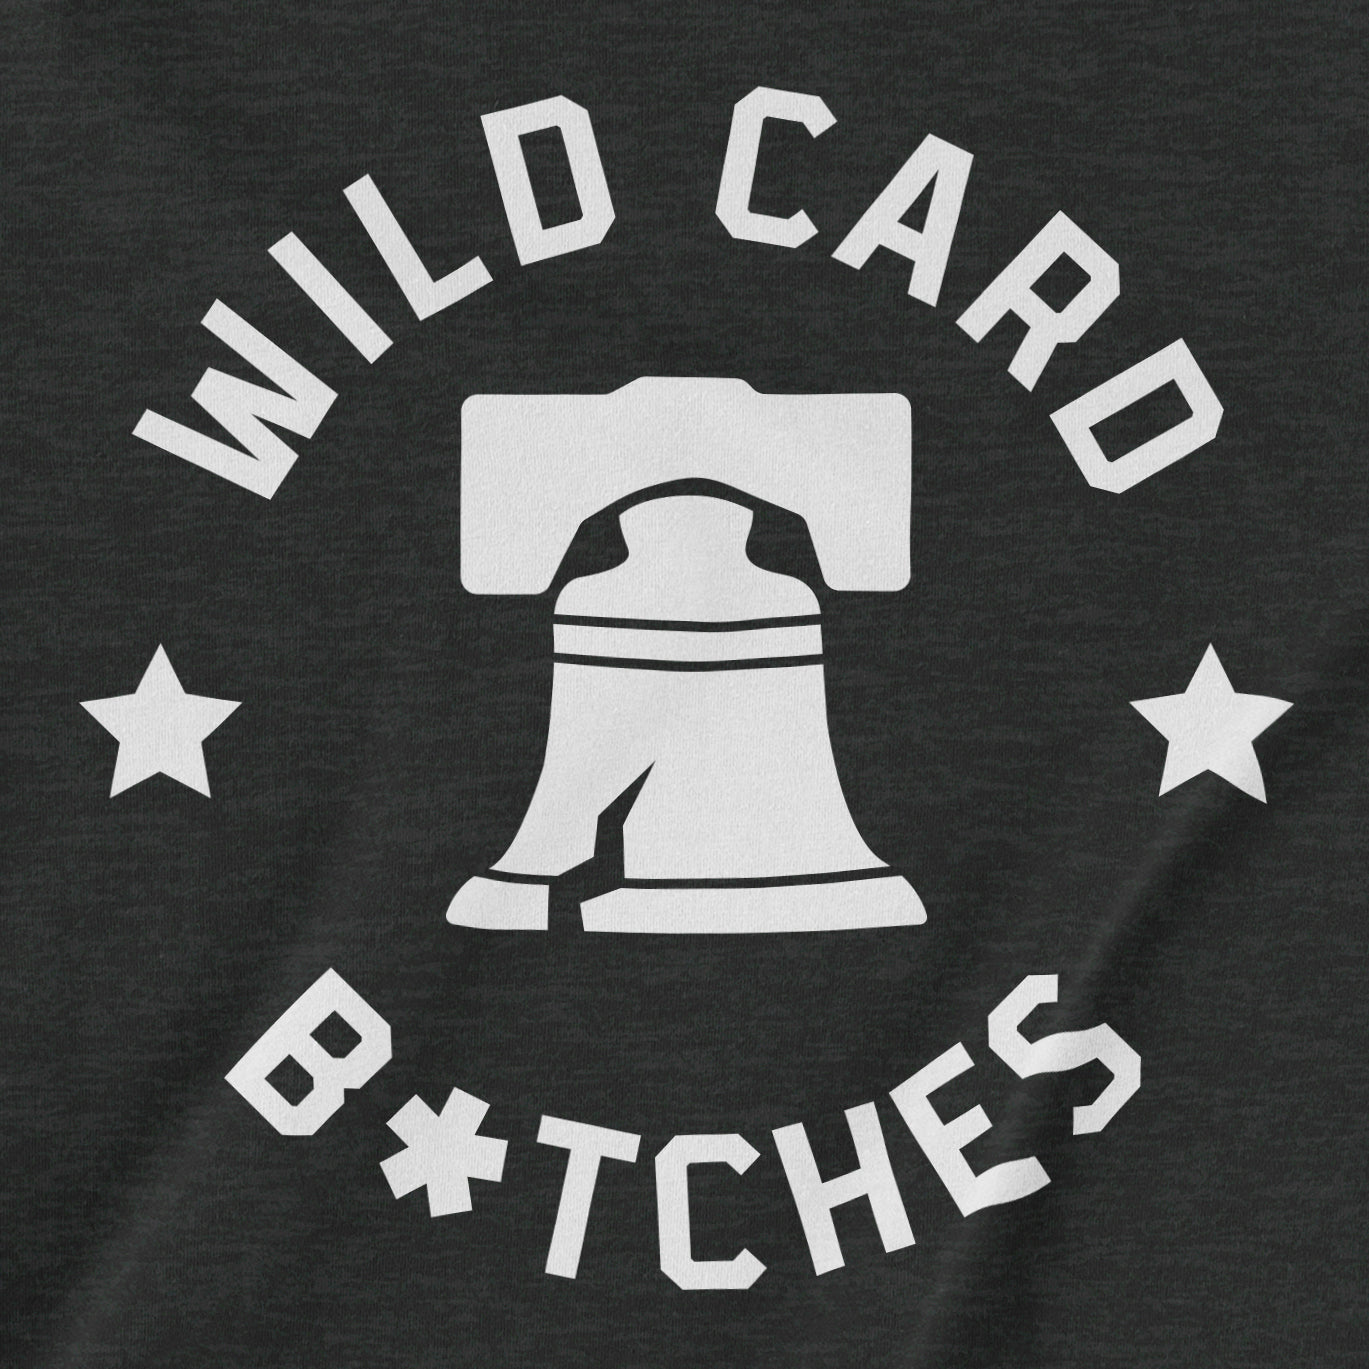 Wild Card B*tches | T-Shirt